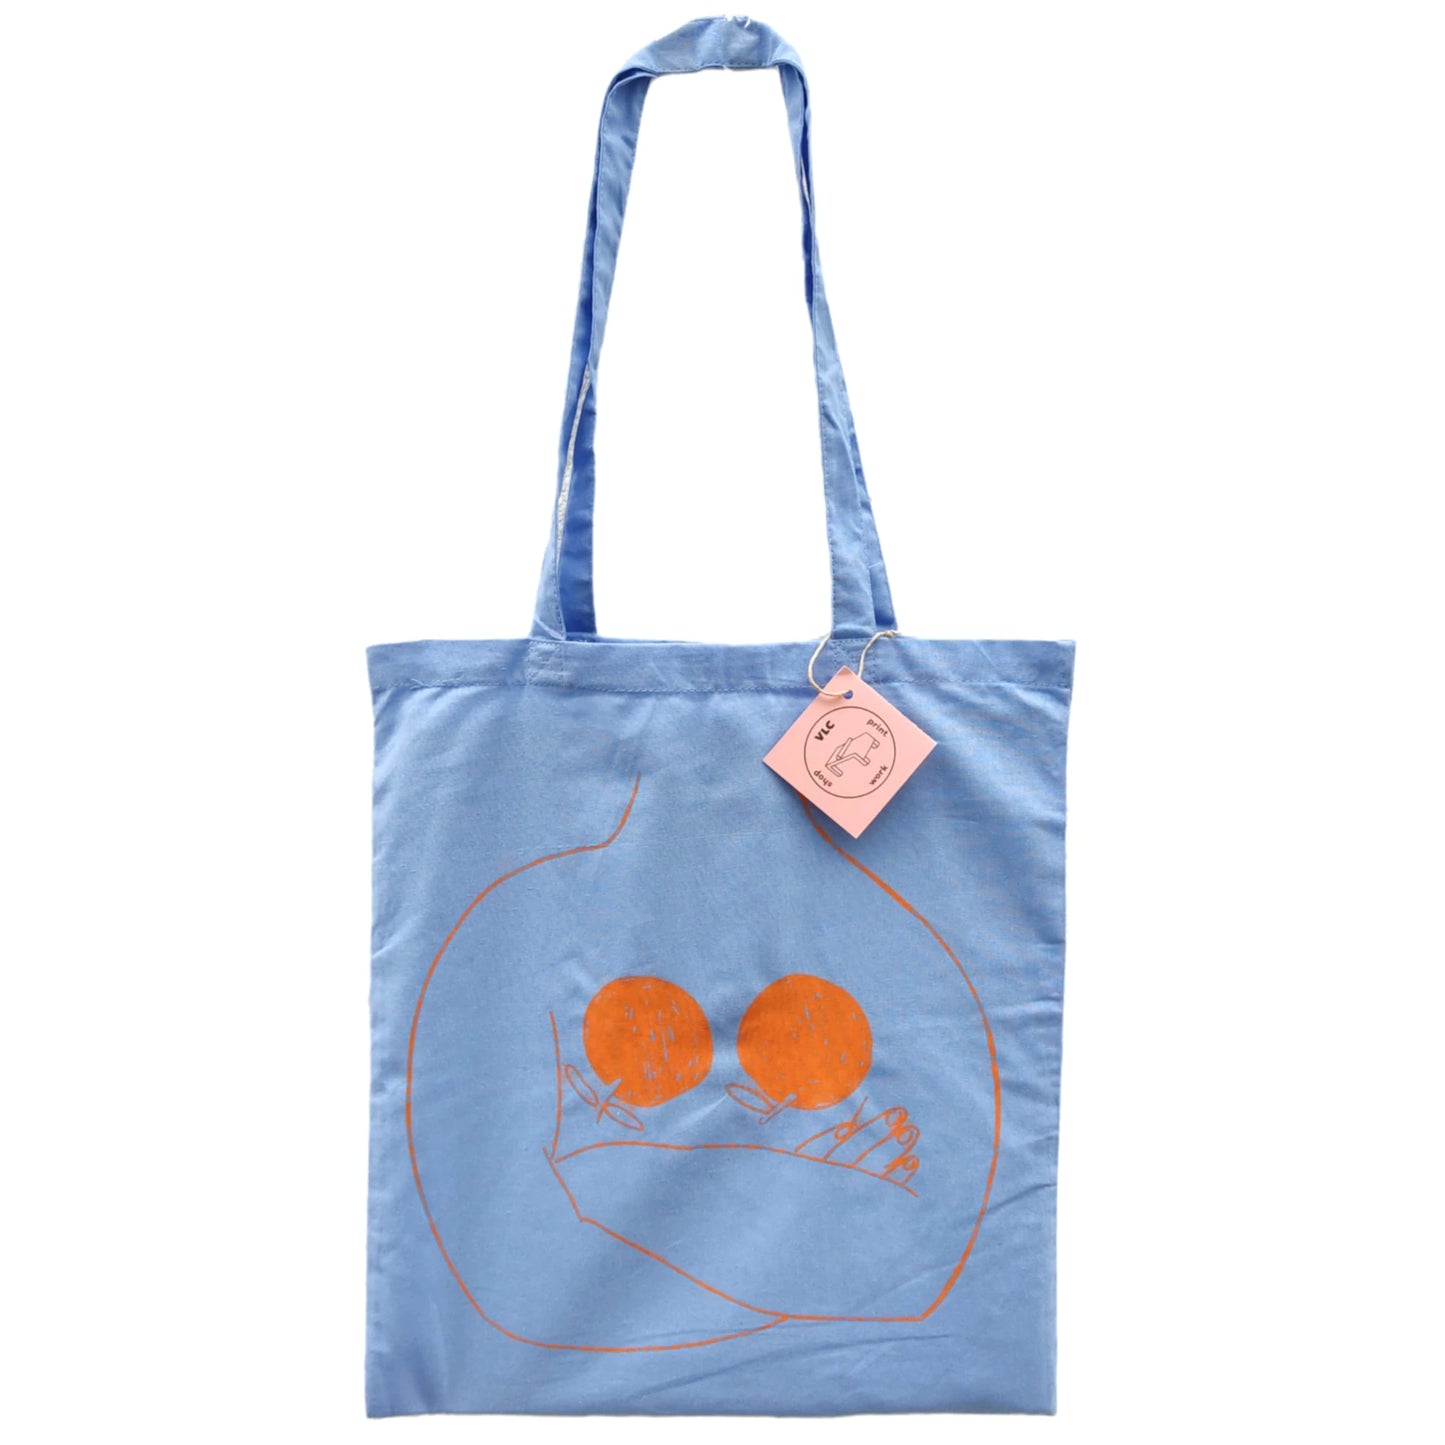 totebag de color azul con una ilustración de una persona cruzada de brazos con dos naranjas en el pecho